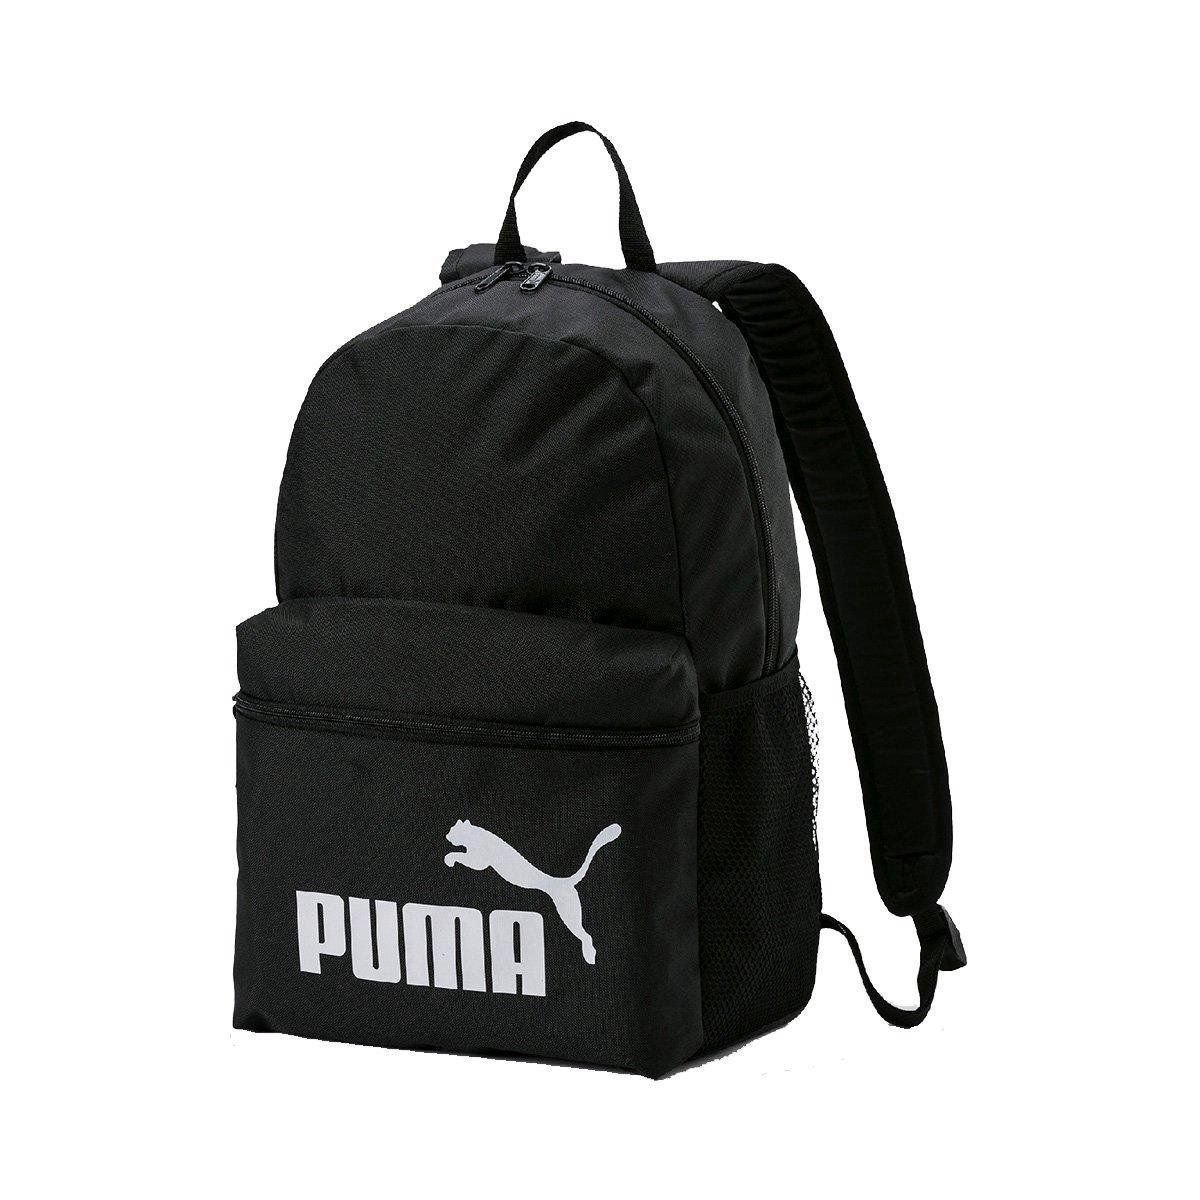 Mochila Puma Phase Backpack juvenil - unissex